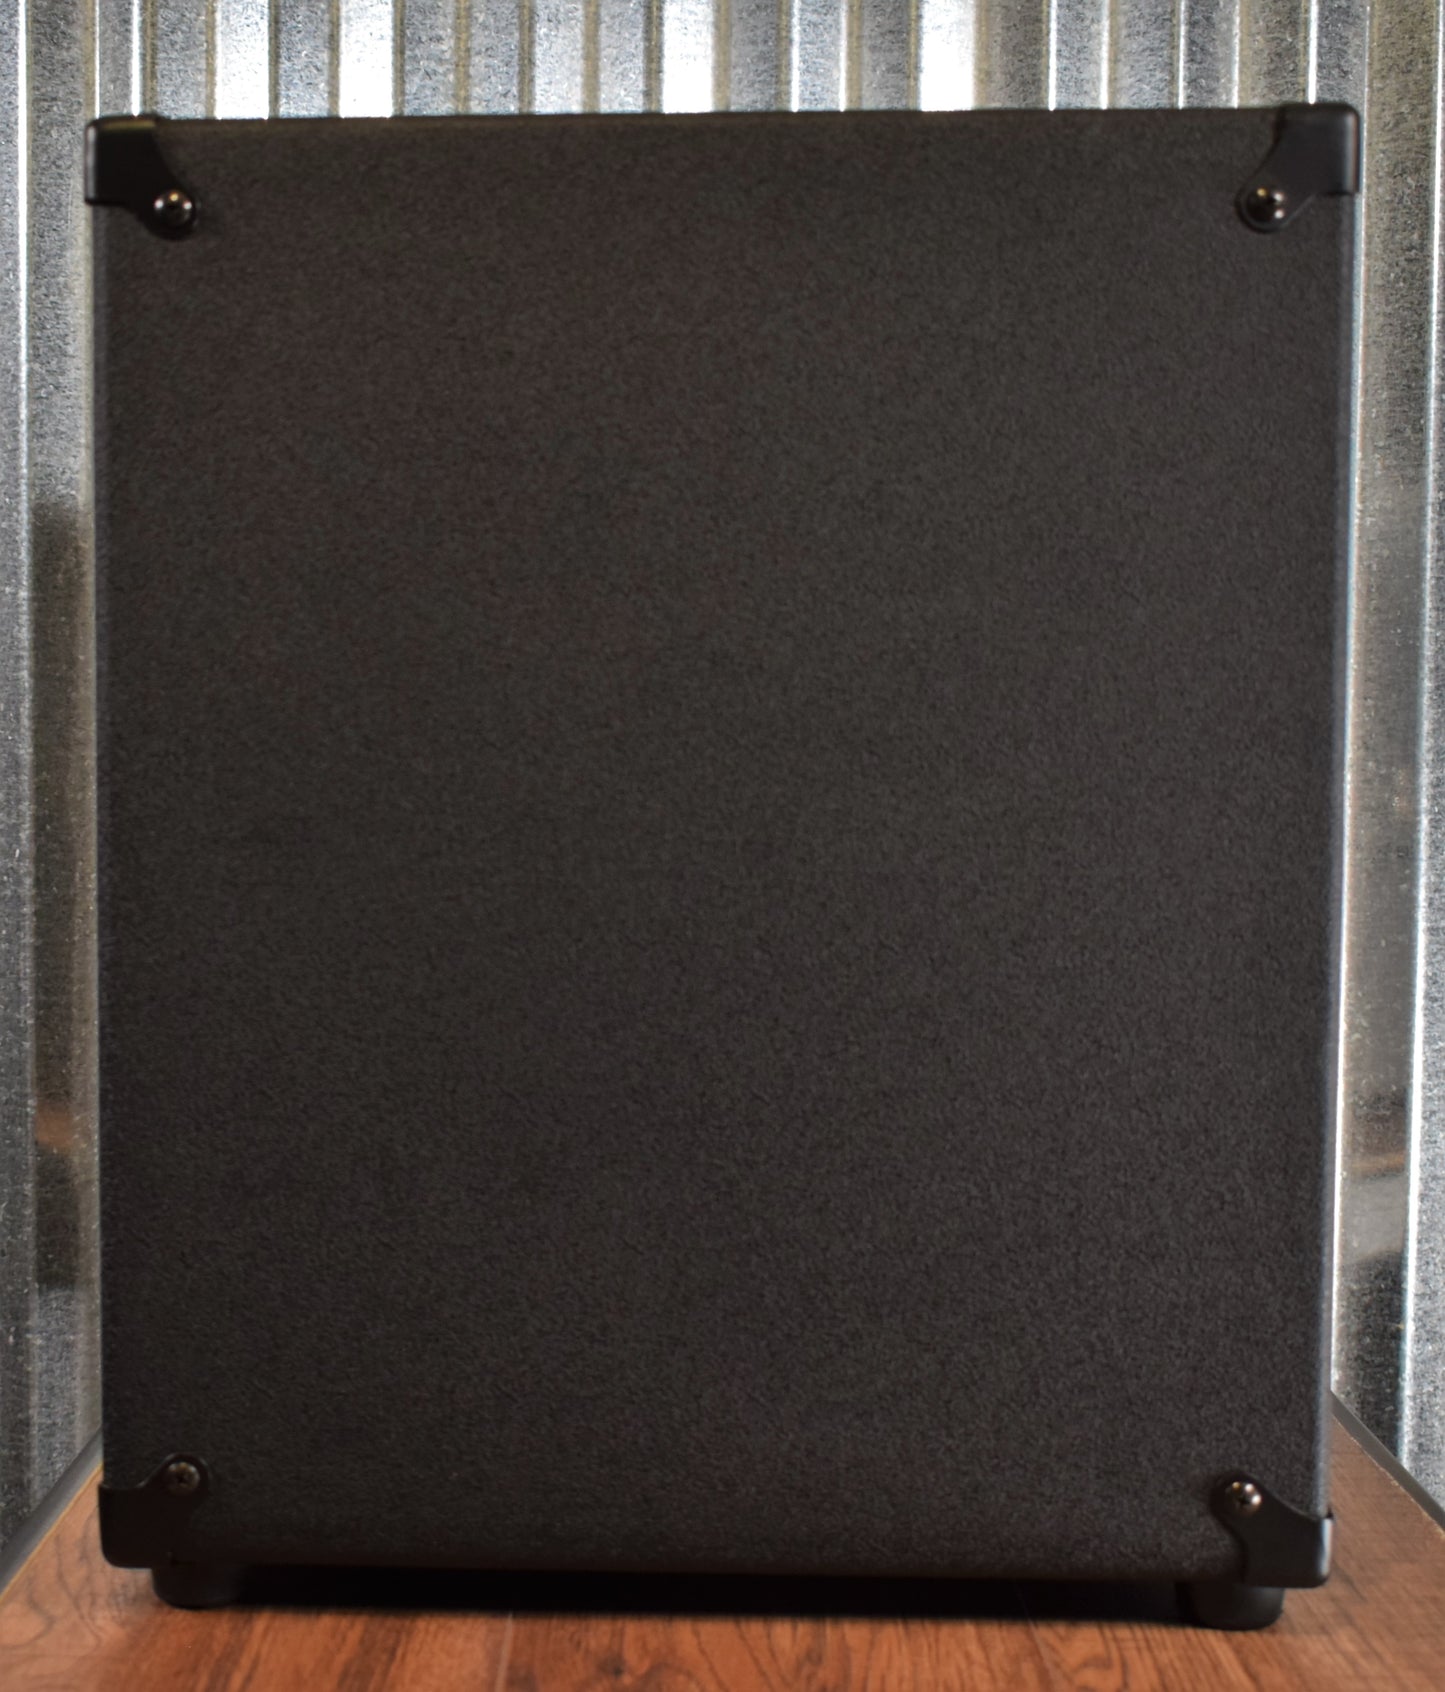 Gallien-Krueger GK Legacy 112 500 Watt 1x12" Ultralight Bass Combo Amplifier with Overdrive